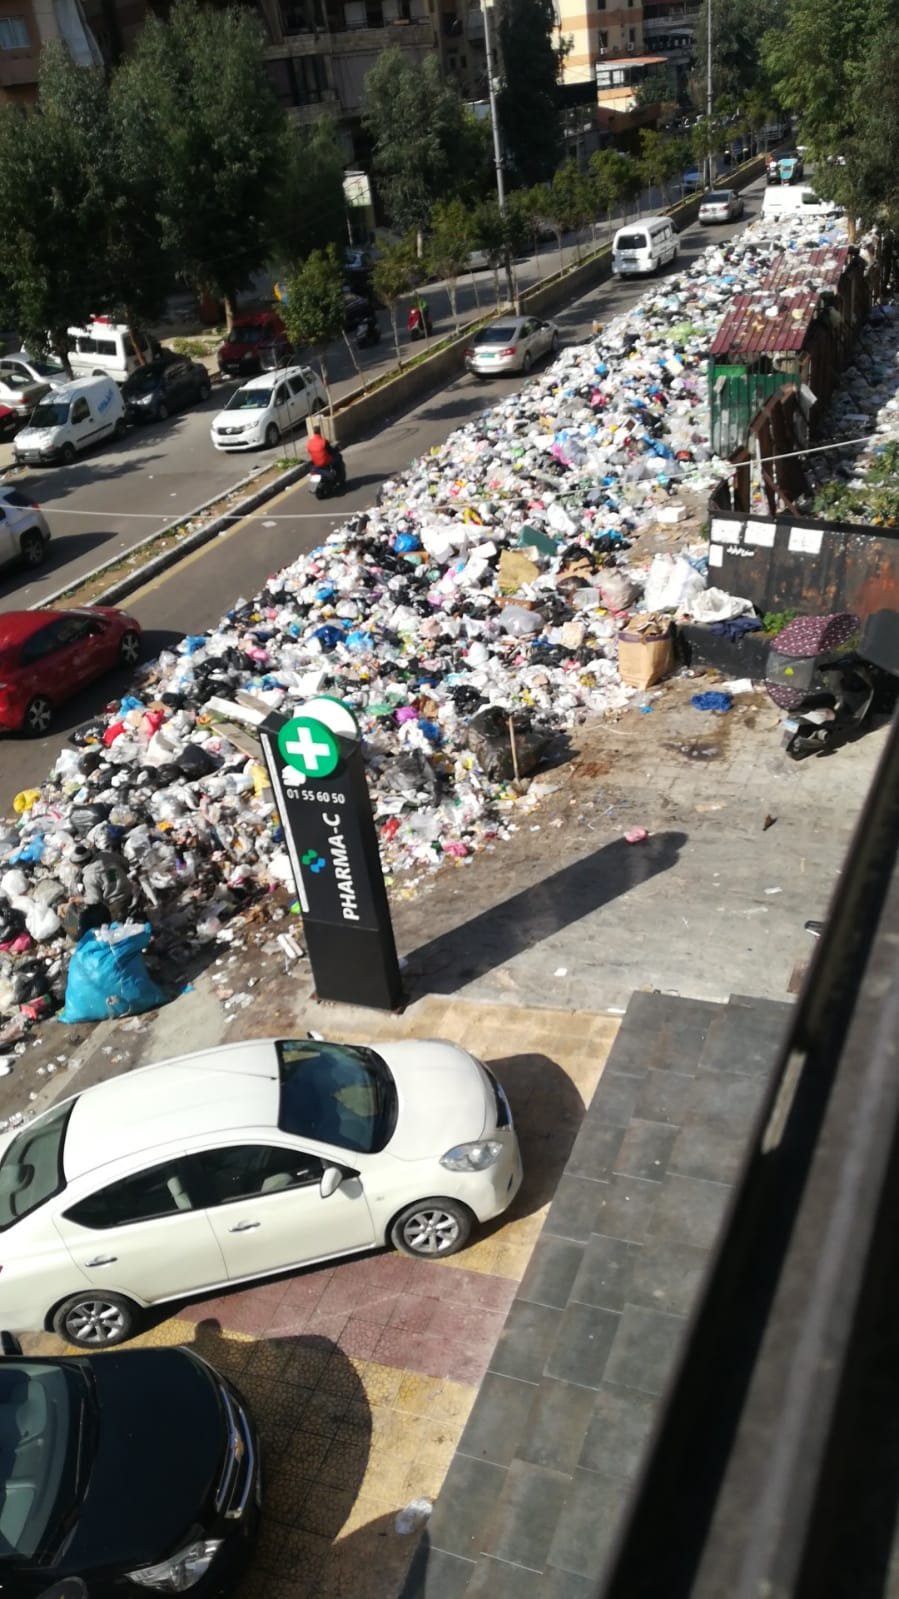 النفايات تتكدس في الشوارع بسبب اضراب عمال شركتي 